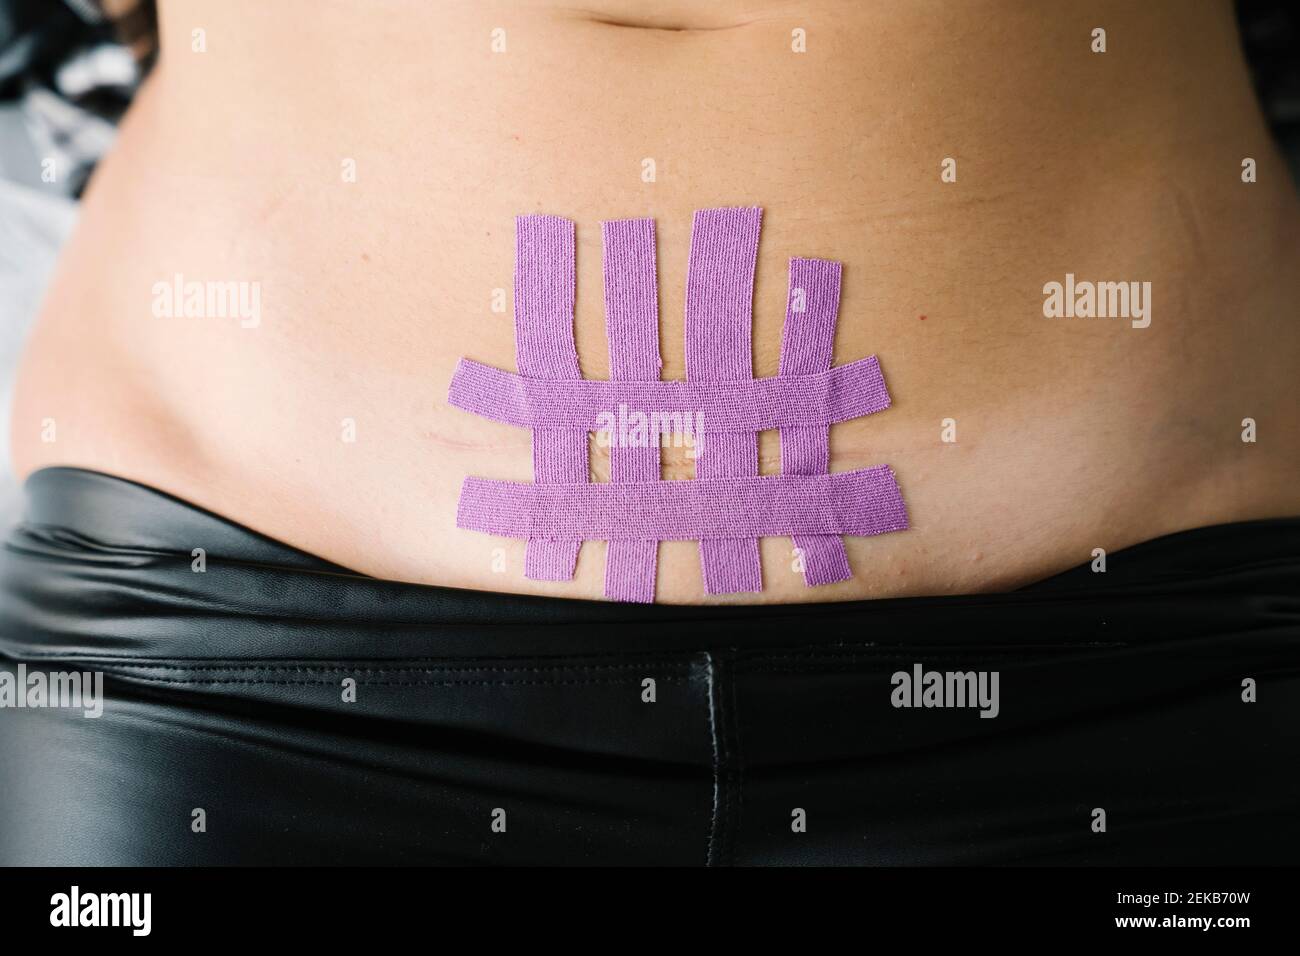 Ruban thérapeutique élastique violet sur l'abdomen de la femme Banque D'Images